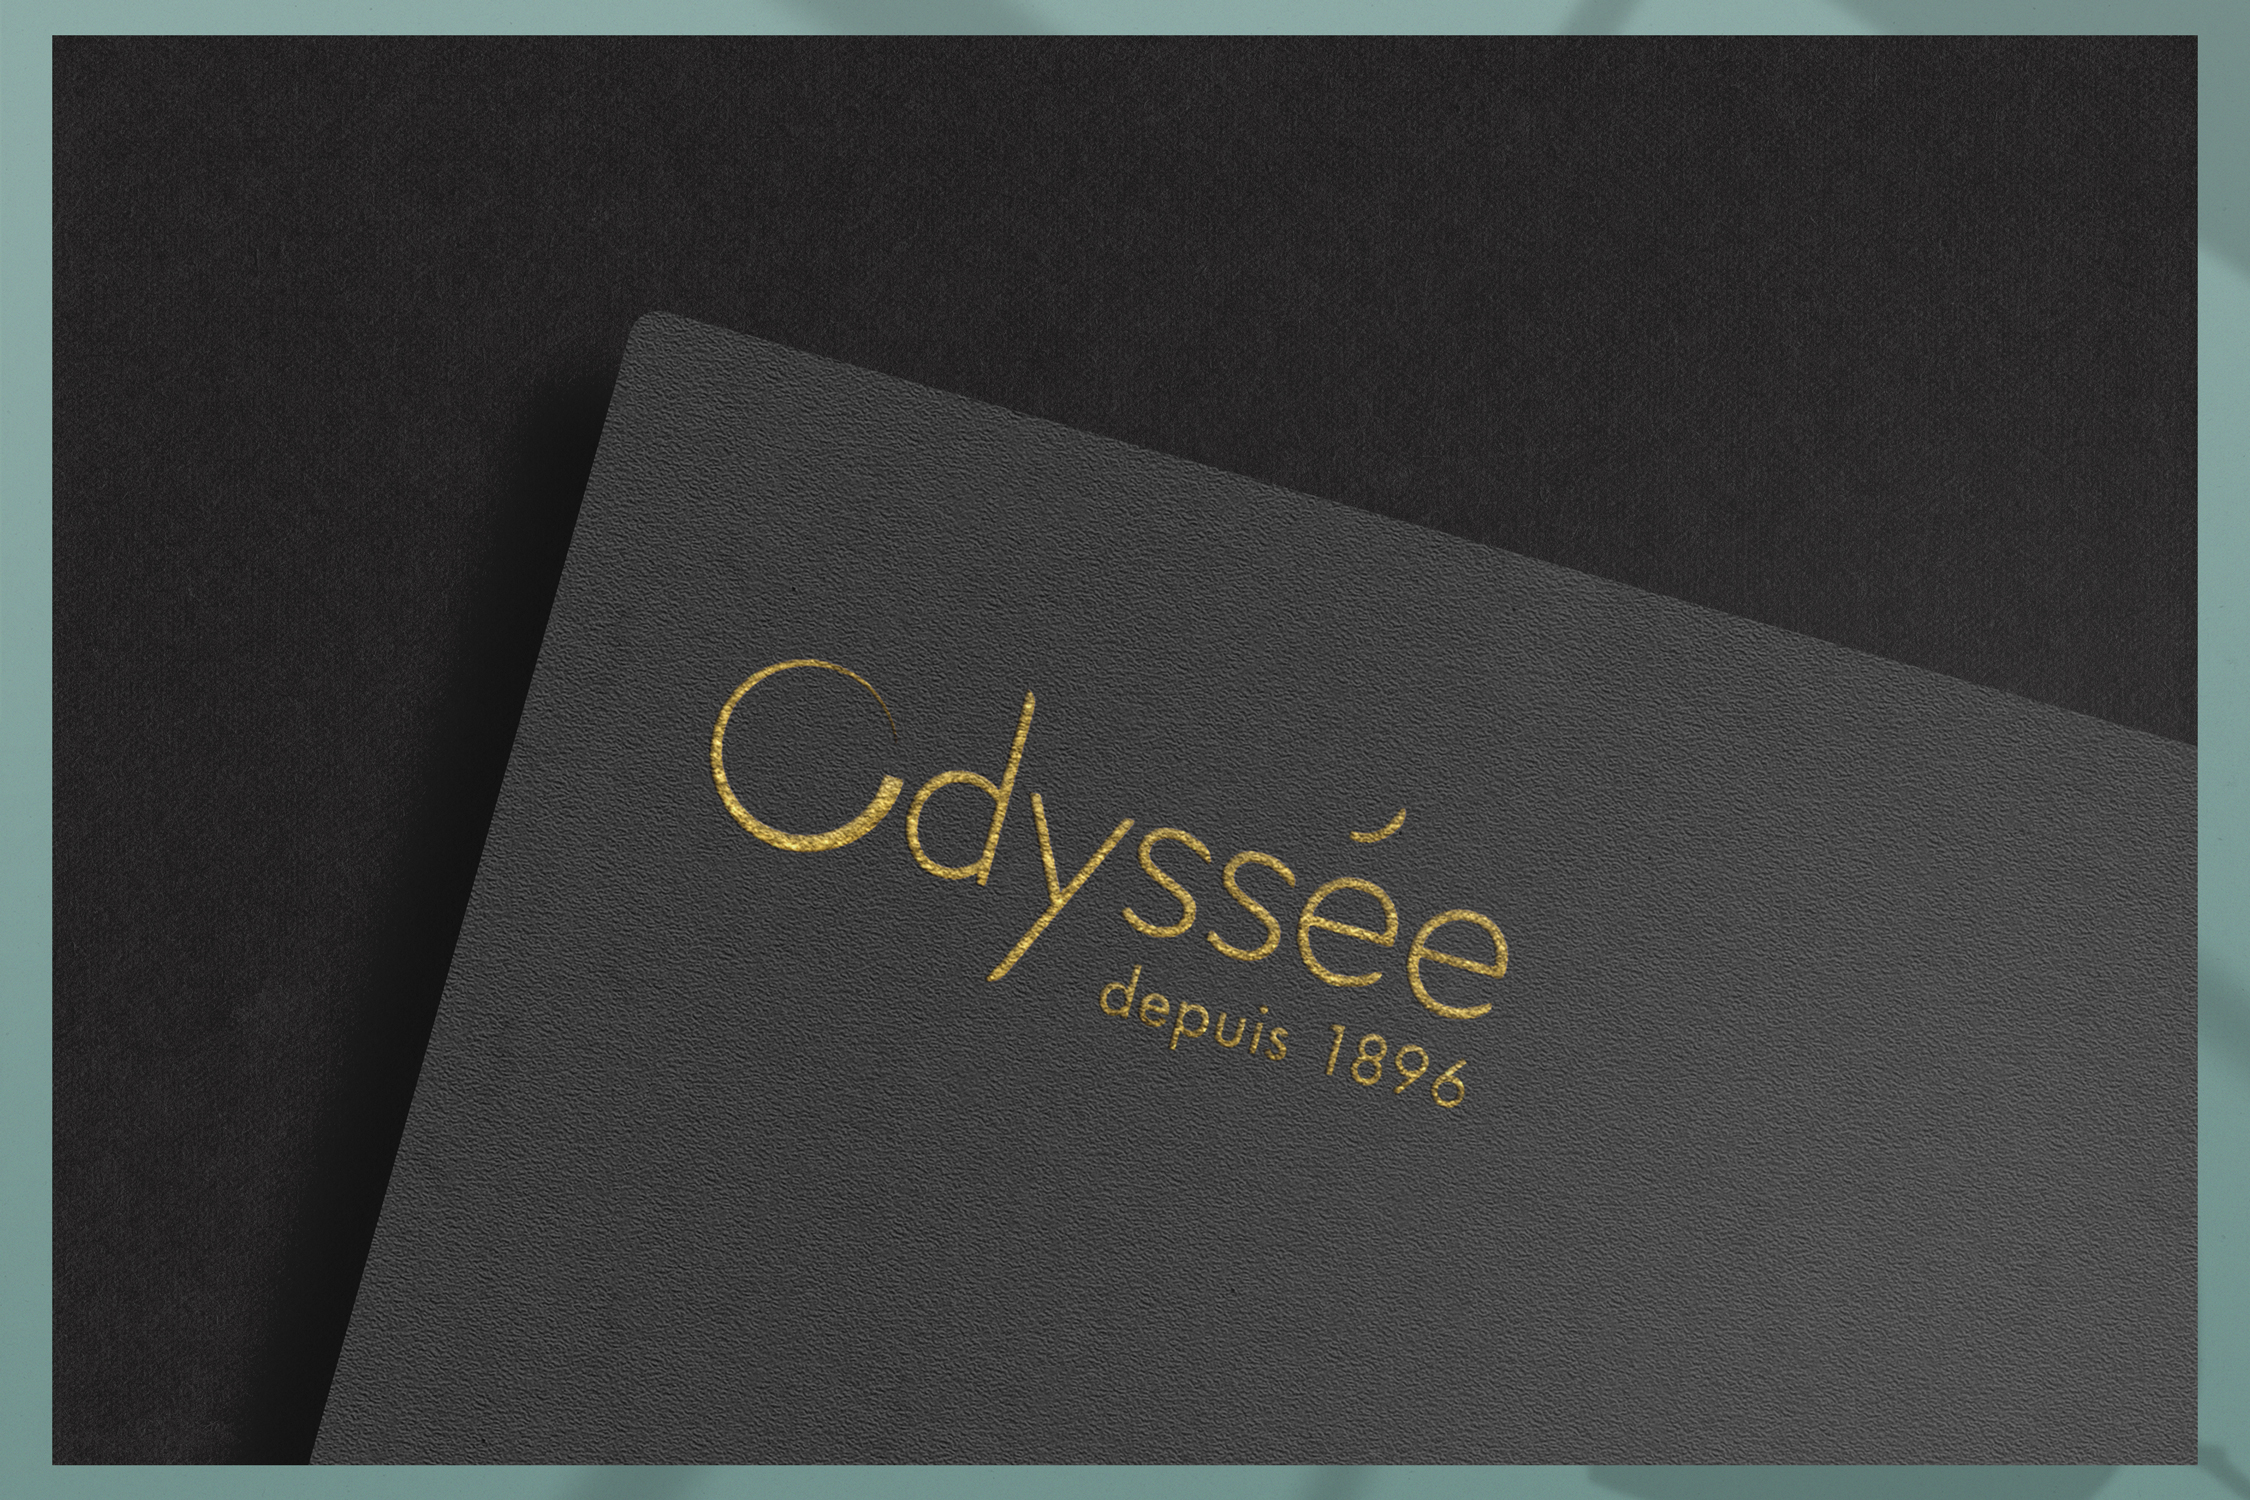 Logo Odyssée